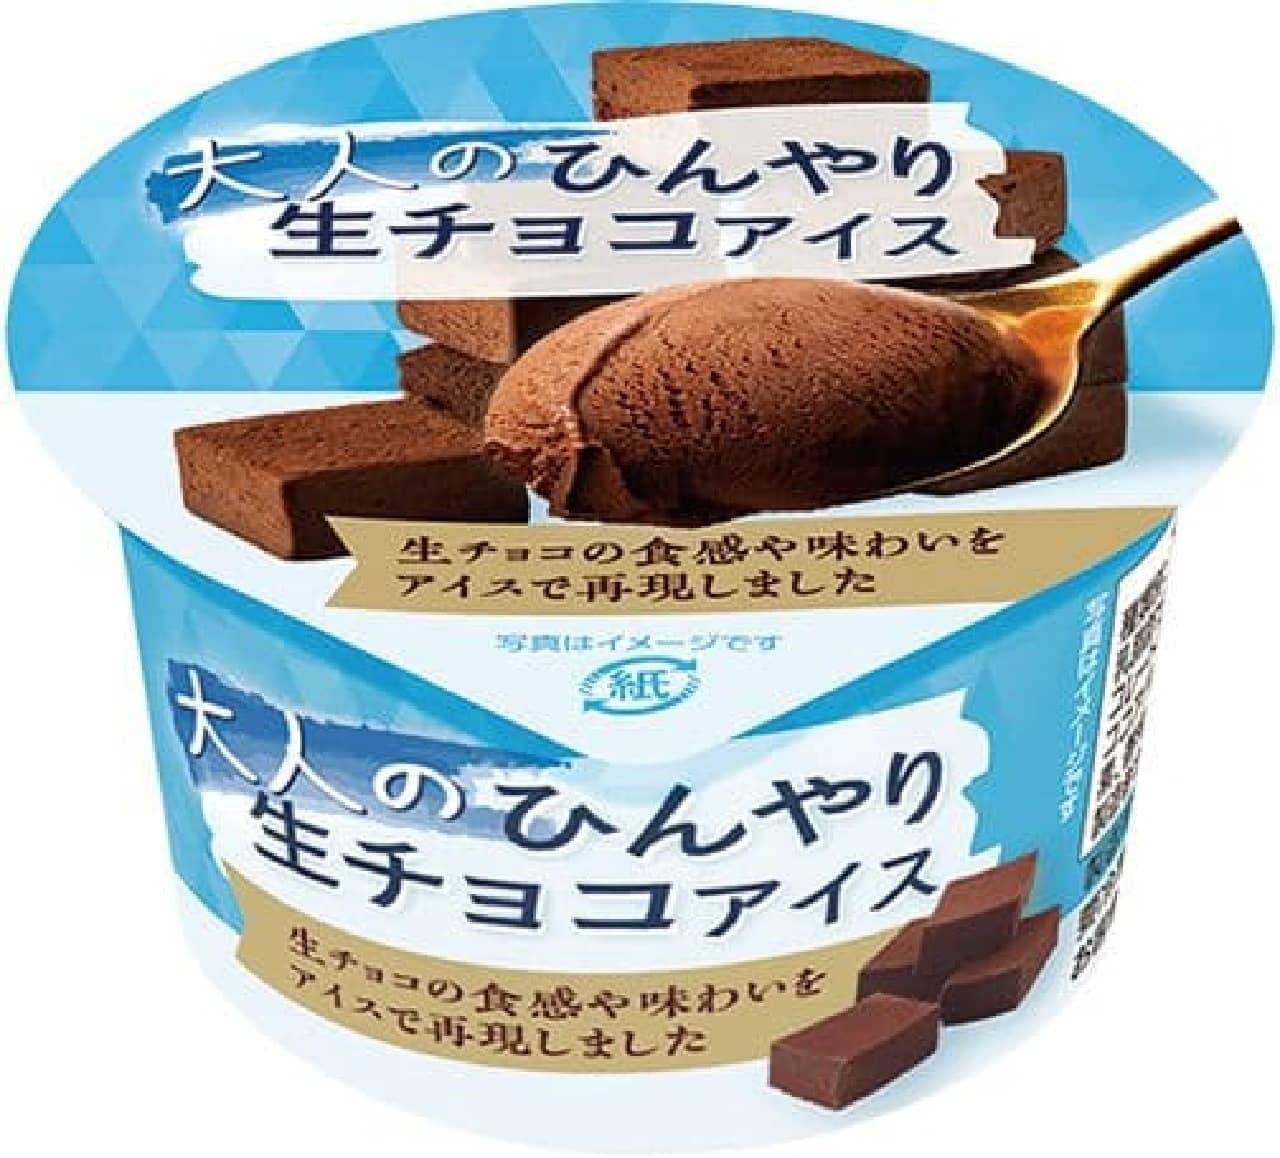 FamilyMart "Akagi Adult Chilly Raw Chocolate Ice Cream